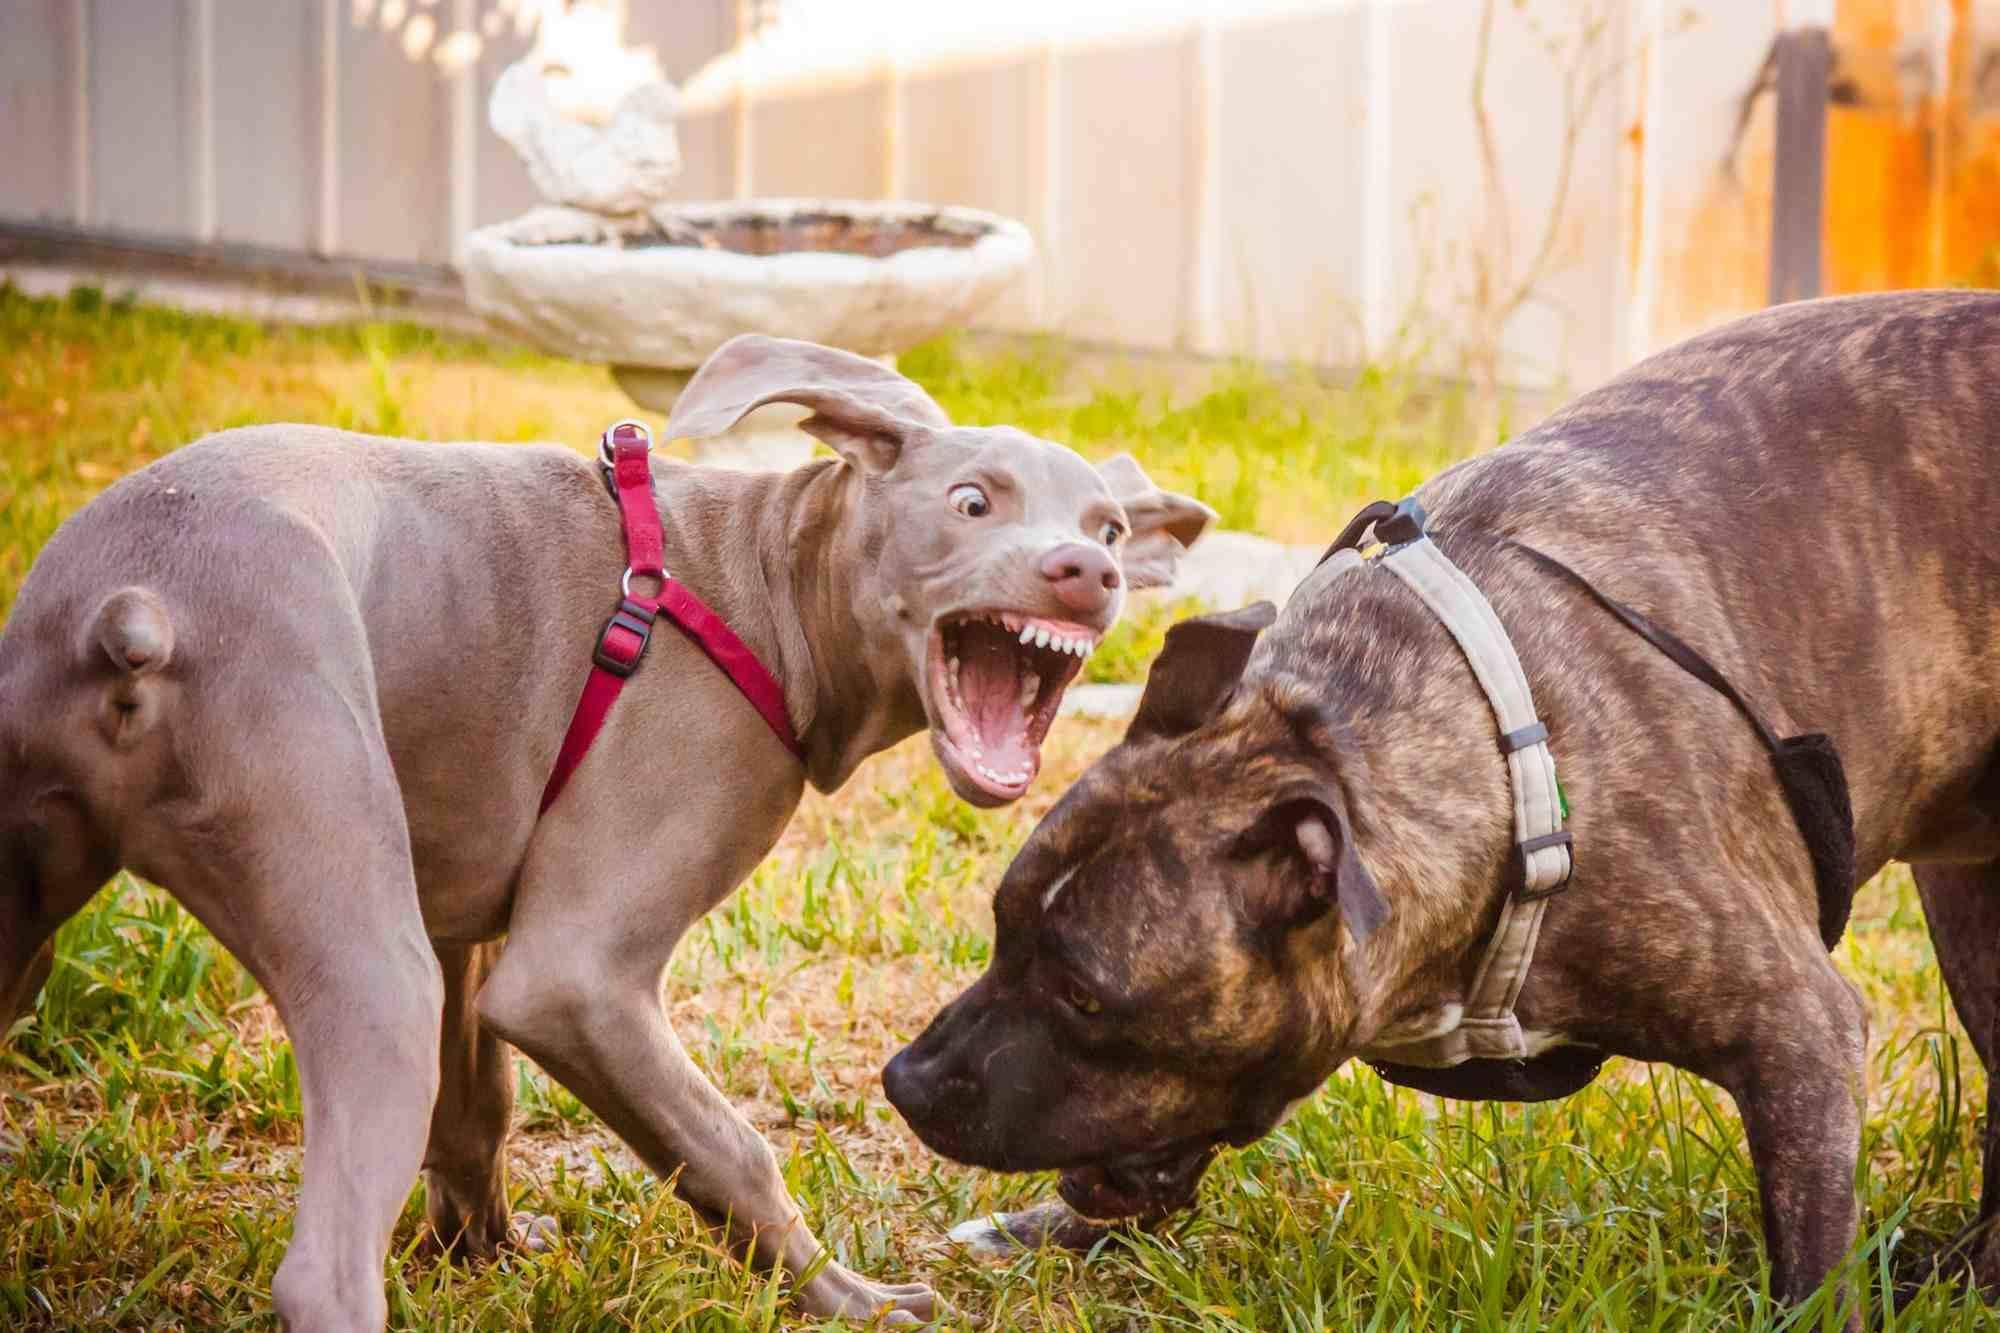 Что делать, если собака проявляет агрессию: советы кинологов по корректировке